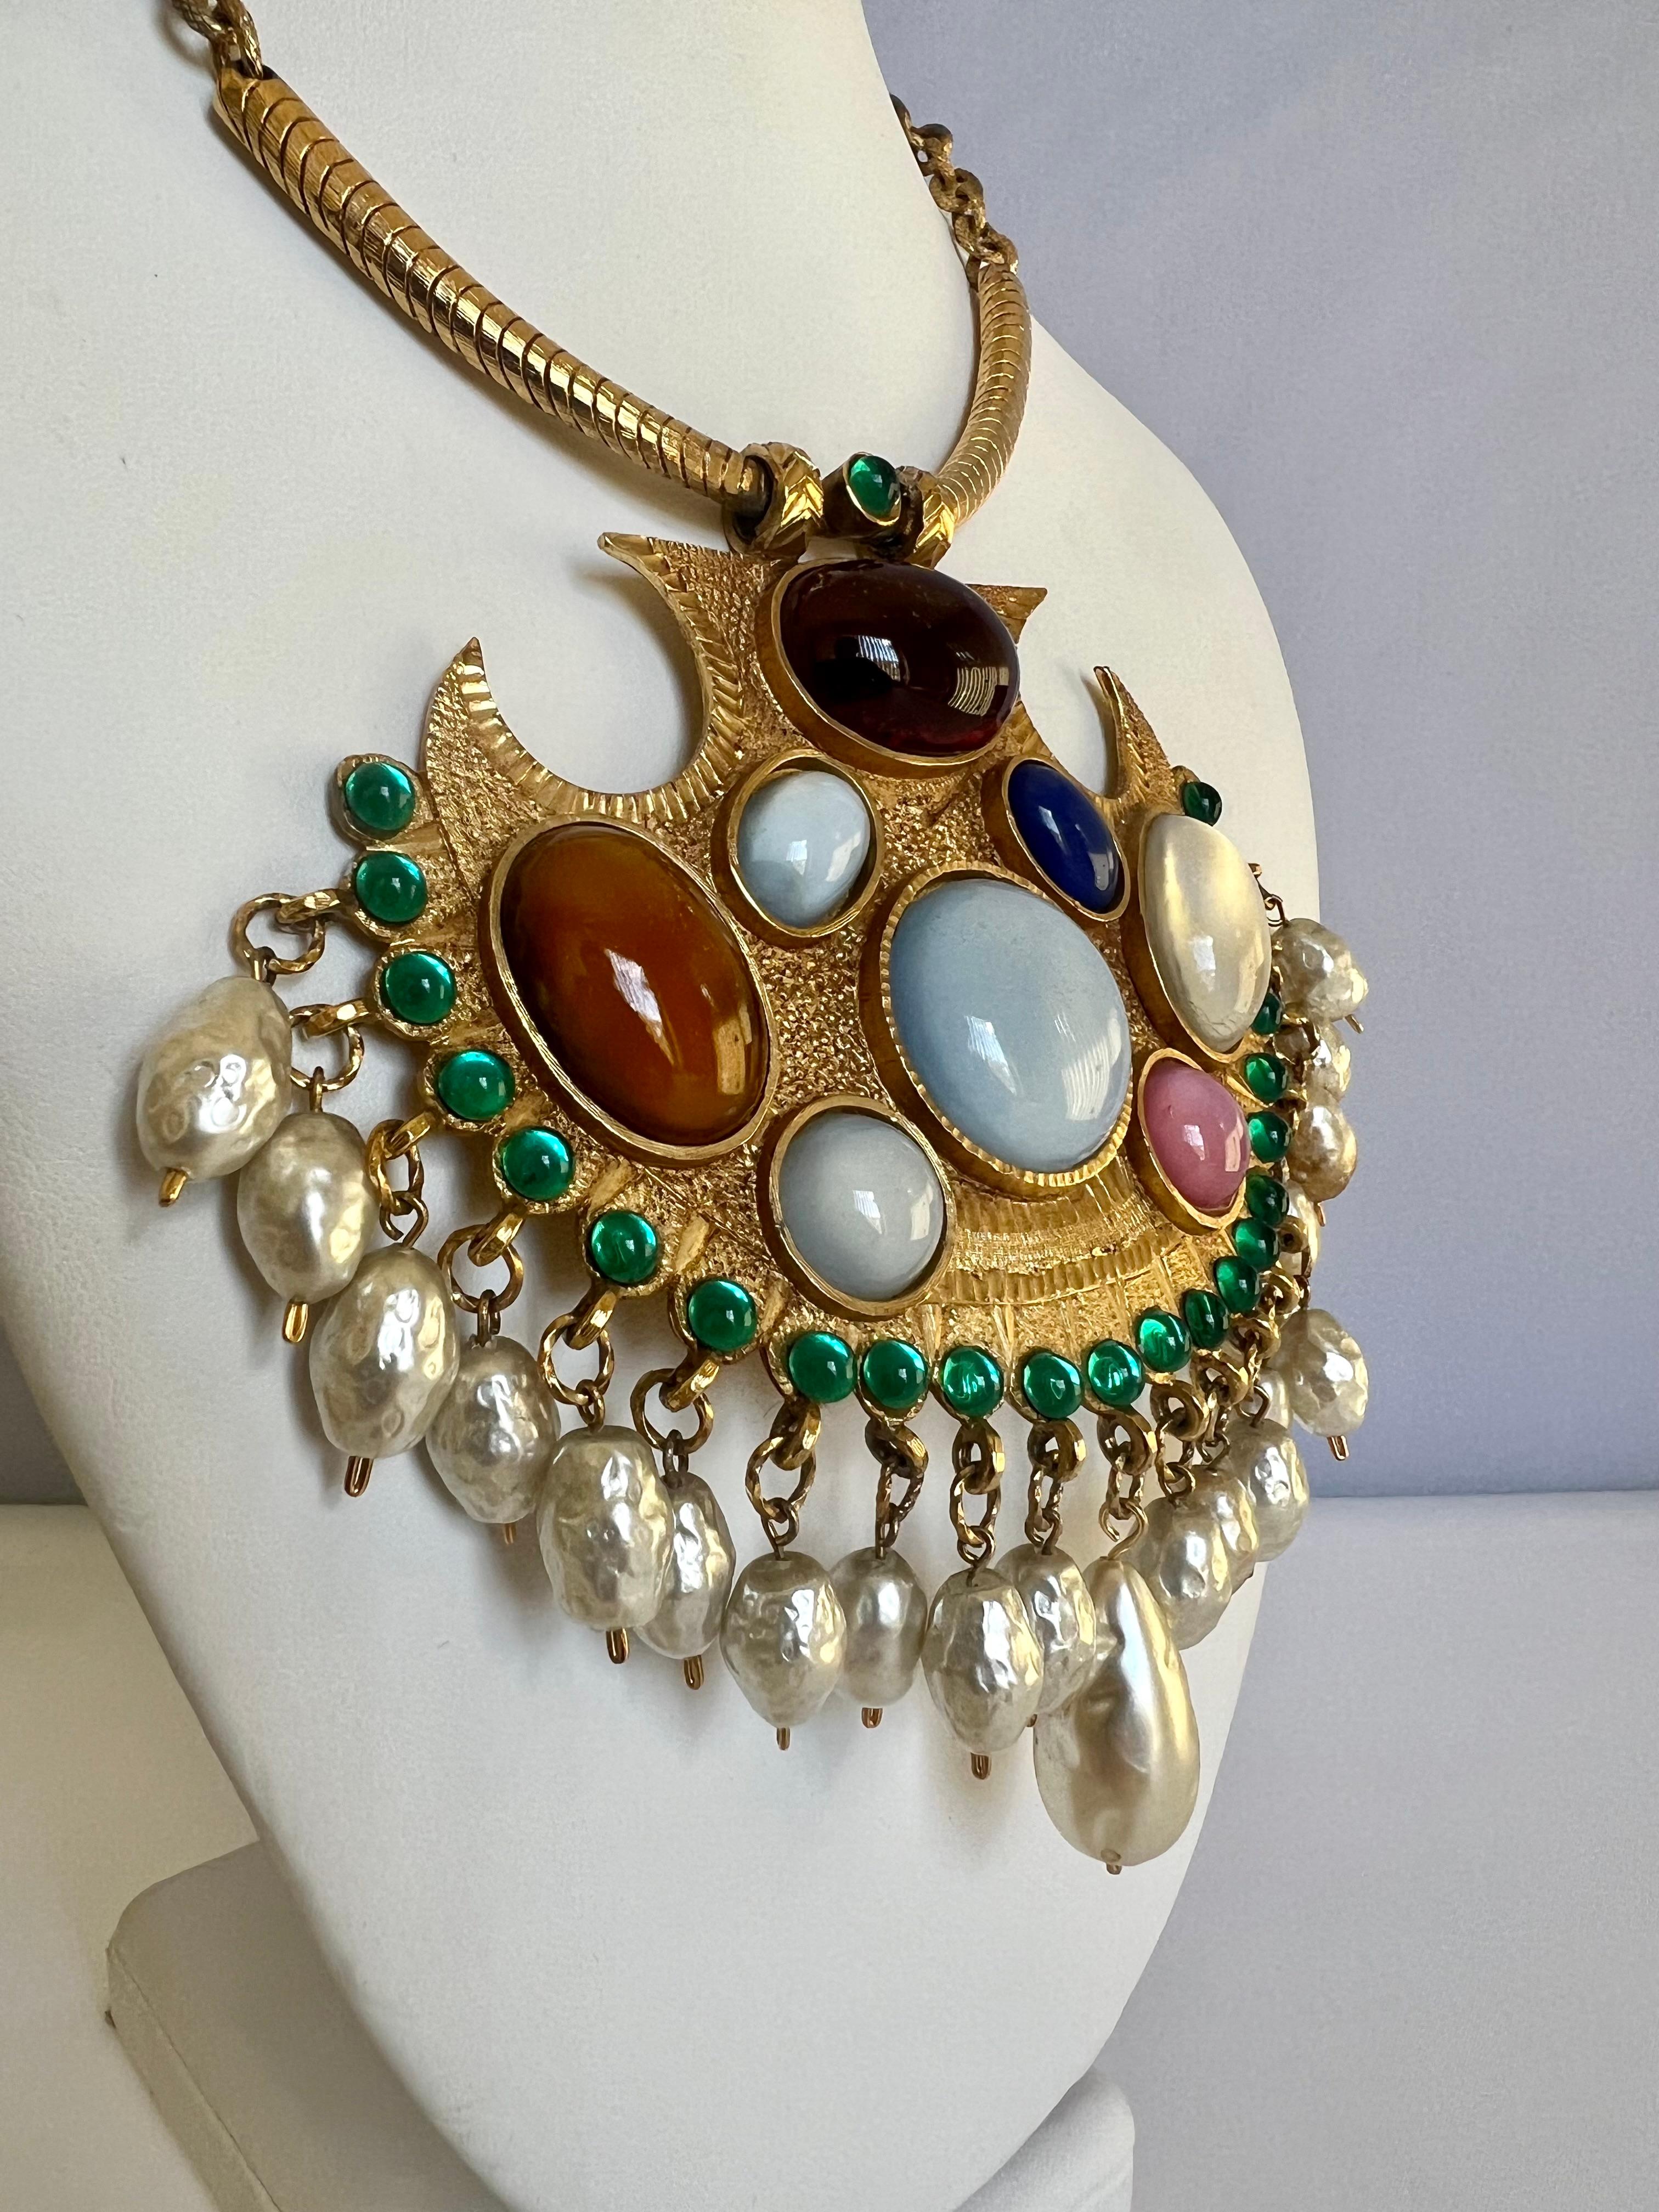 Collier vintage Coco Chanel avec pendentif en métal doré et motifs du Moyen-Orient. Le collier à chaîne en vermeil est orné de cabochons en 